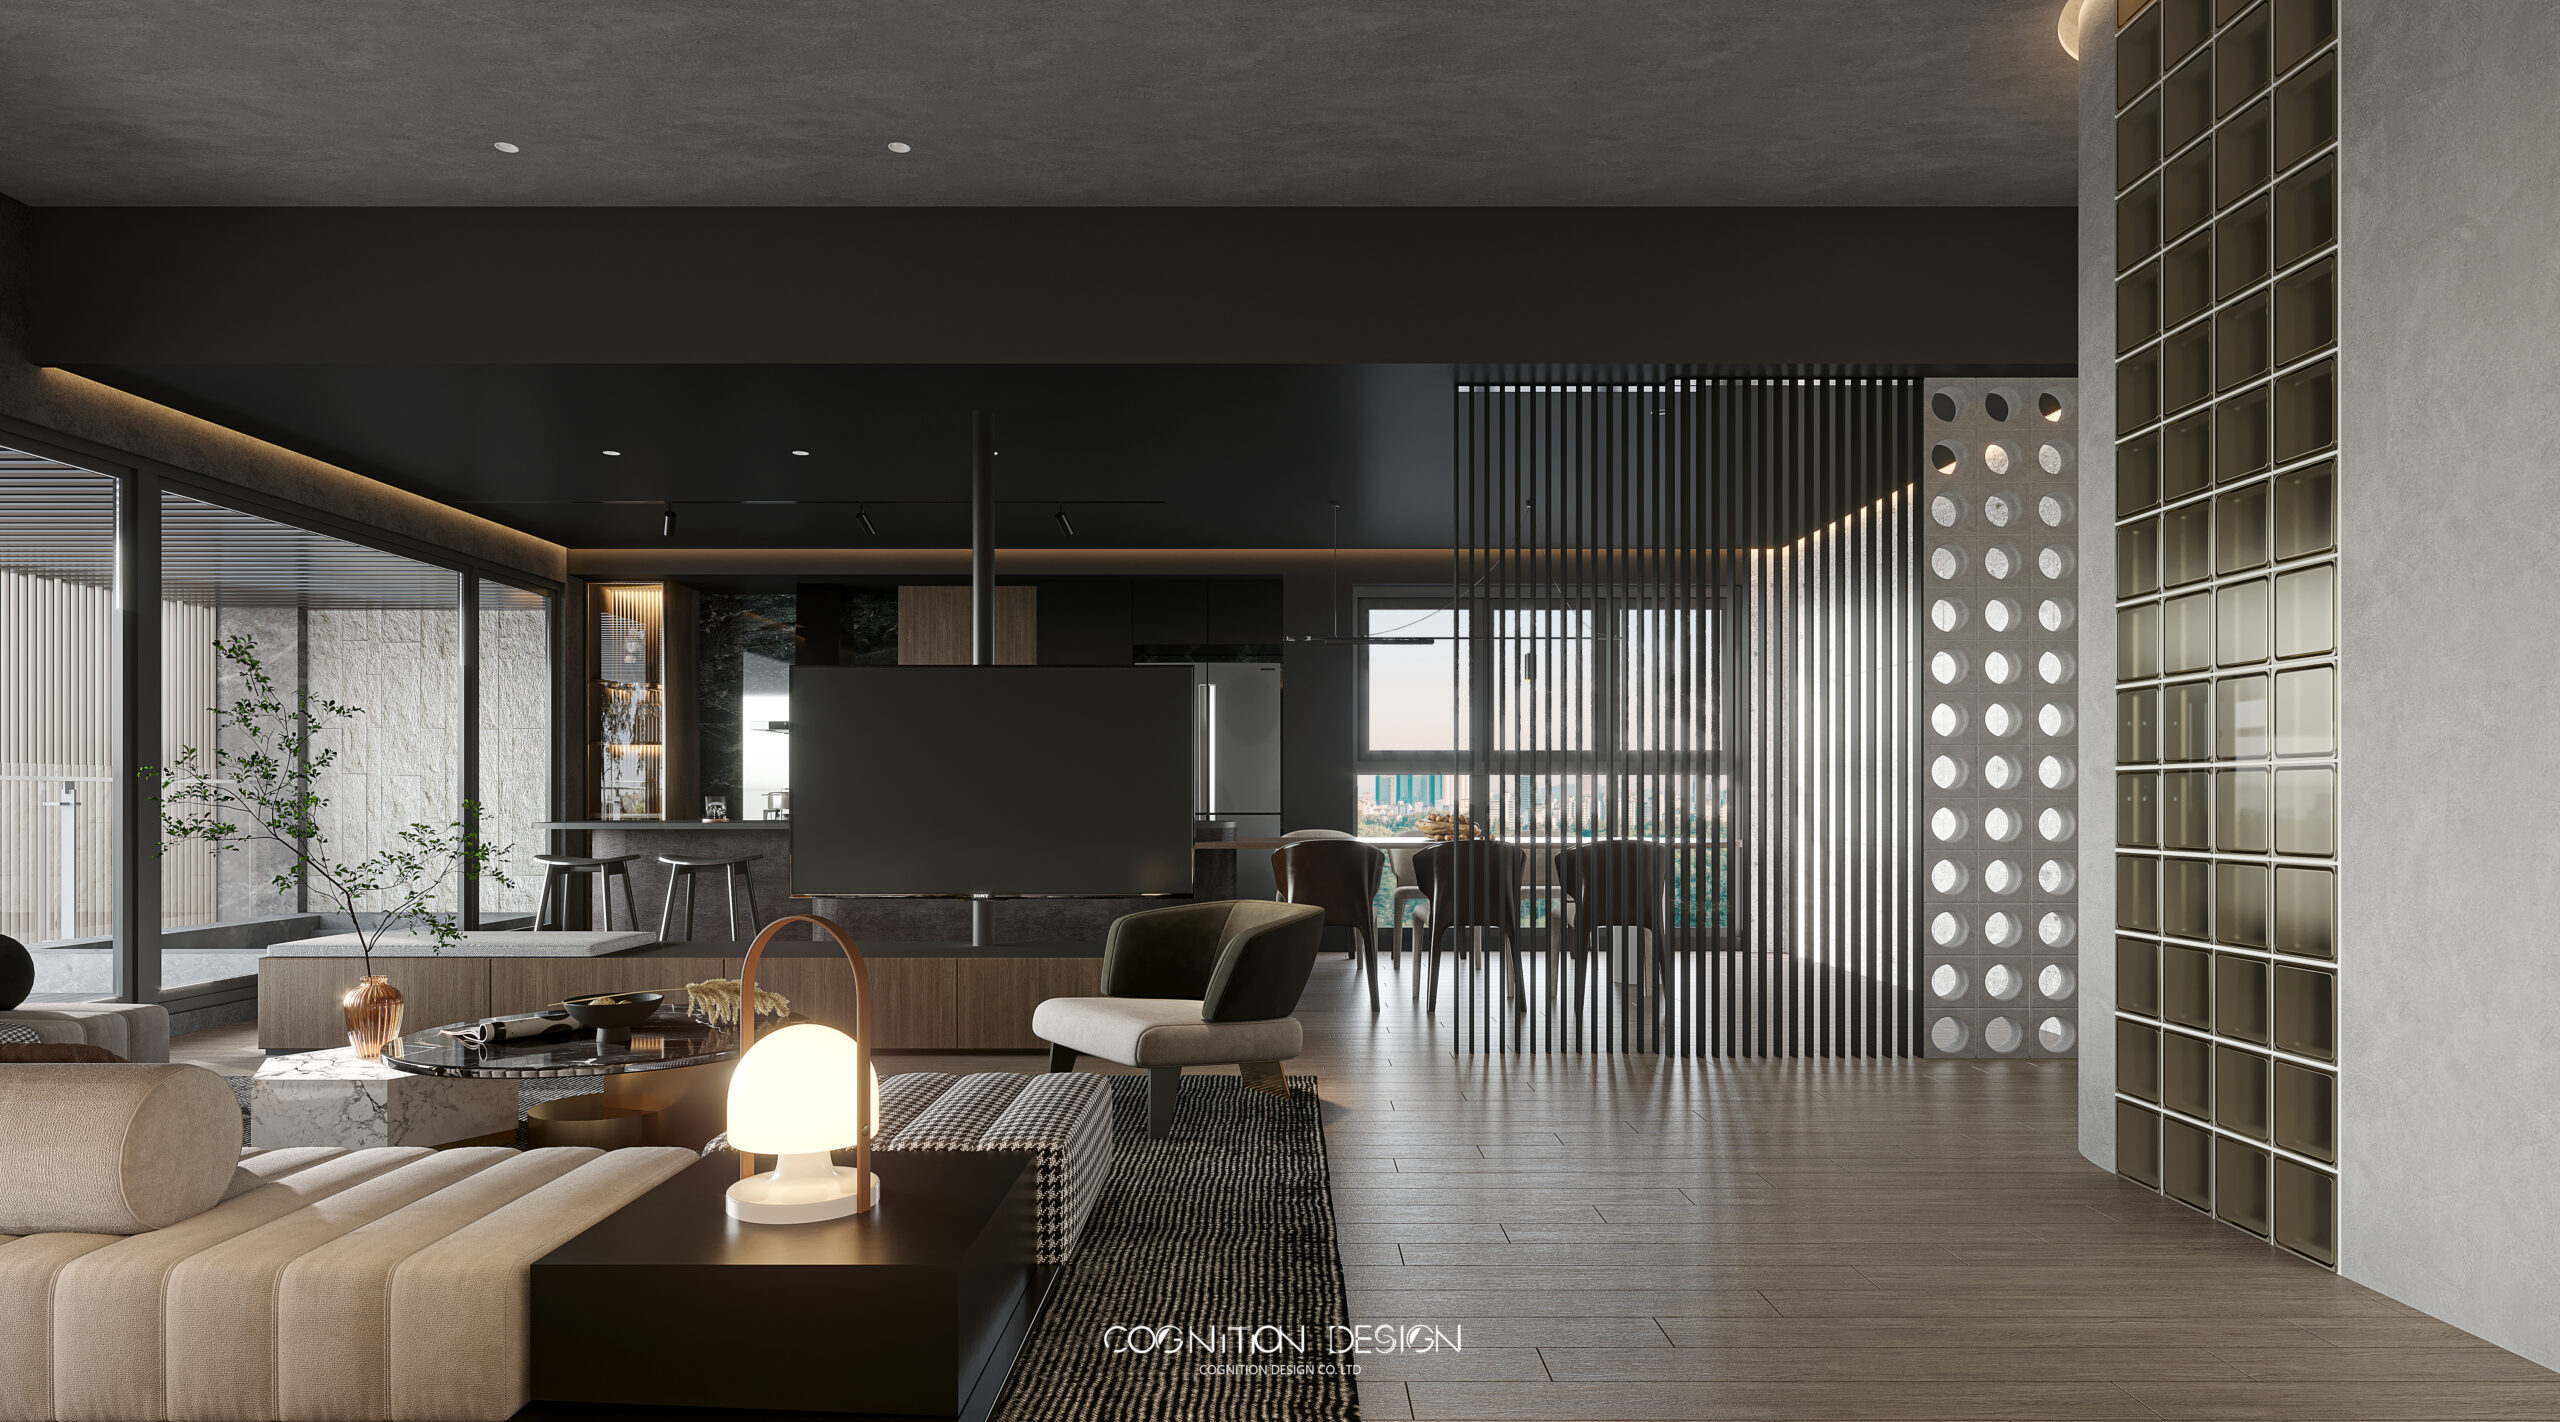 開放式客餐廳室內設計方式，客廳室內設計中使用可360度旋轉電視架可任意轉換觀賞位置，滿足享受影音娛樂的需求